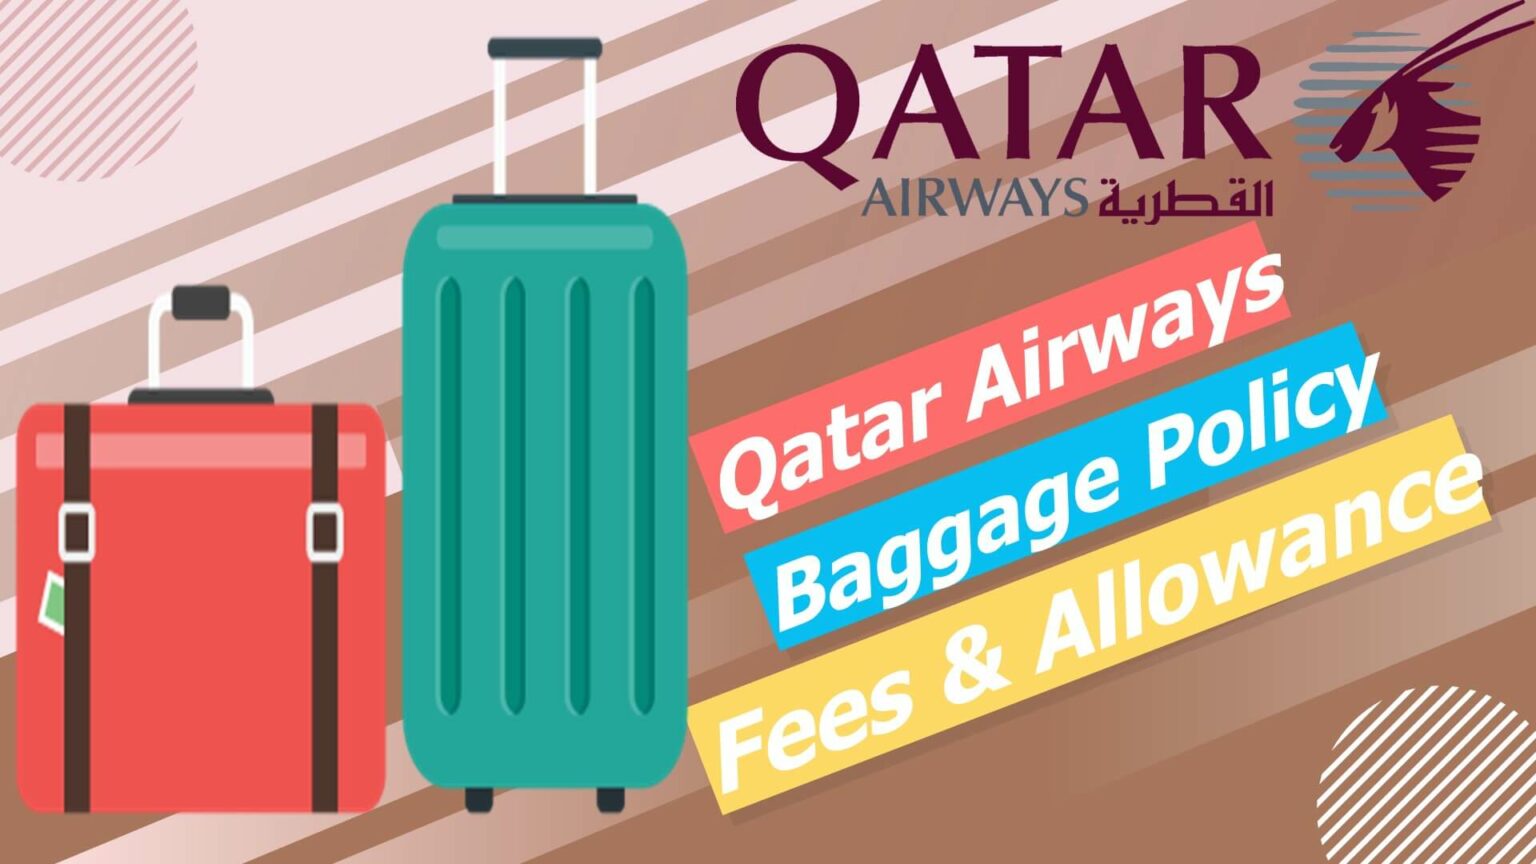 qatar-airways-baggage-policy-fees-allowance